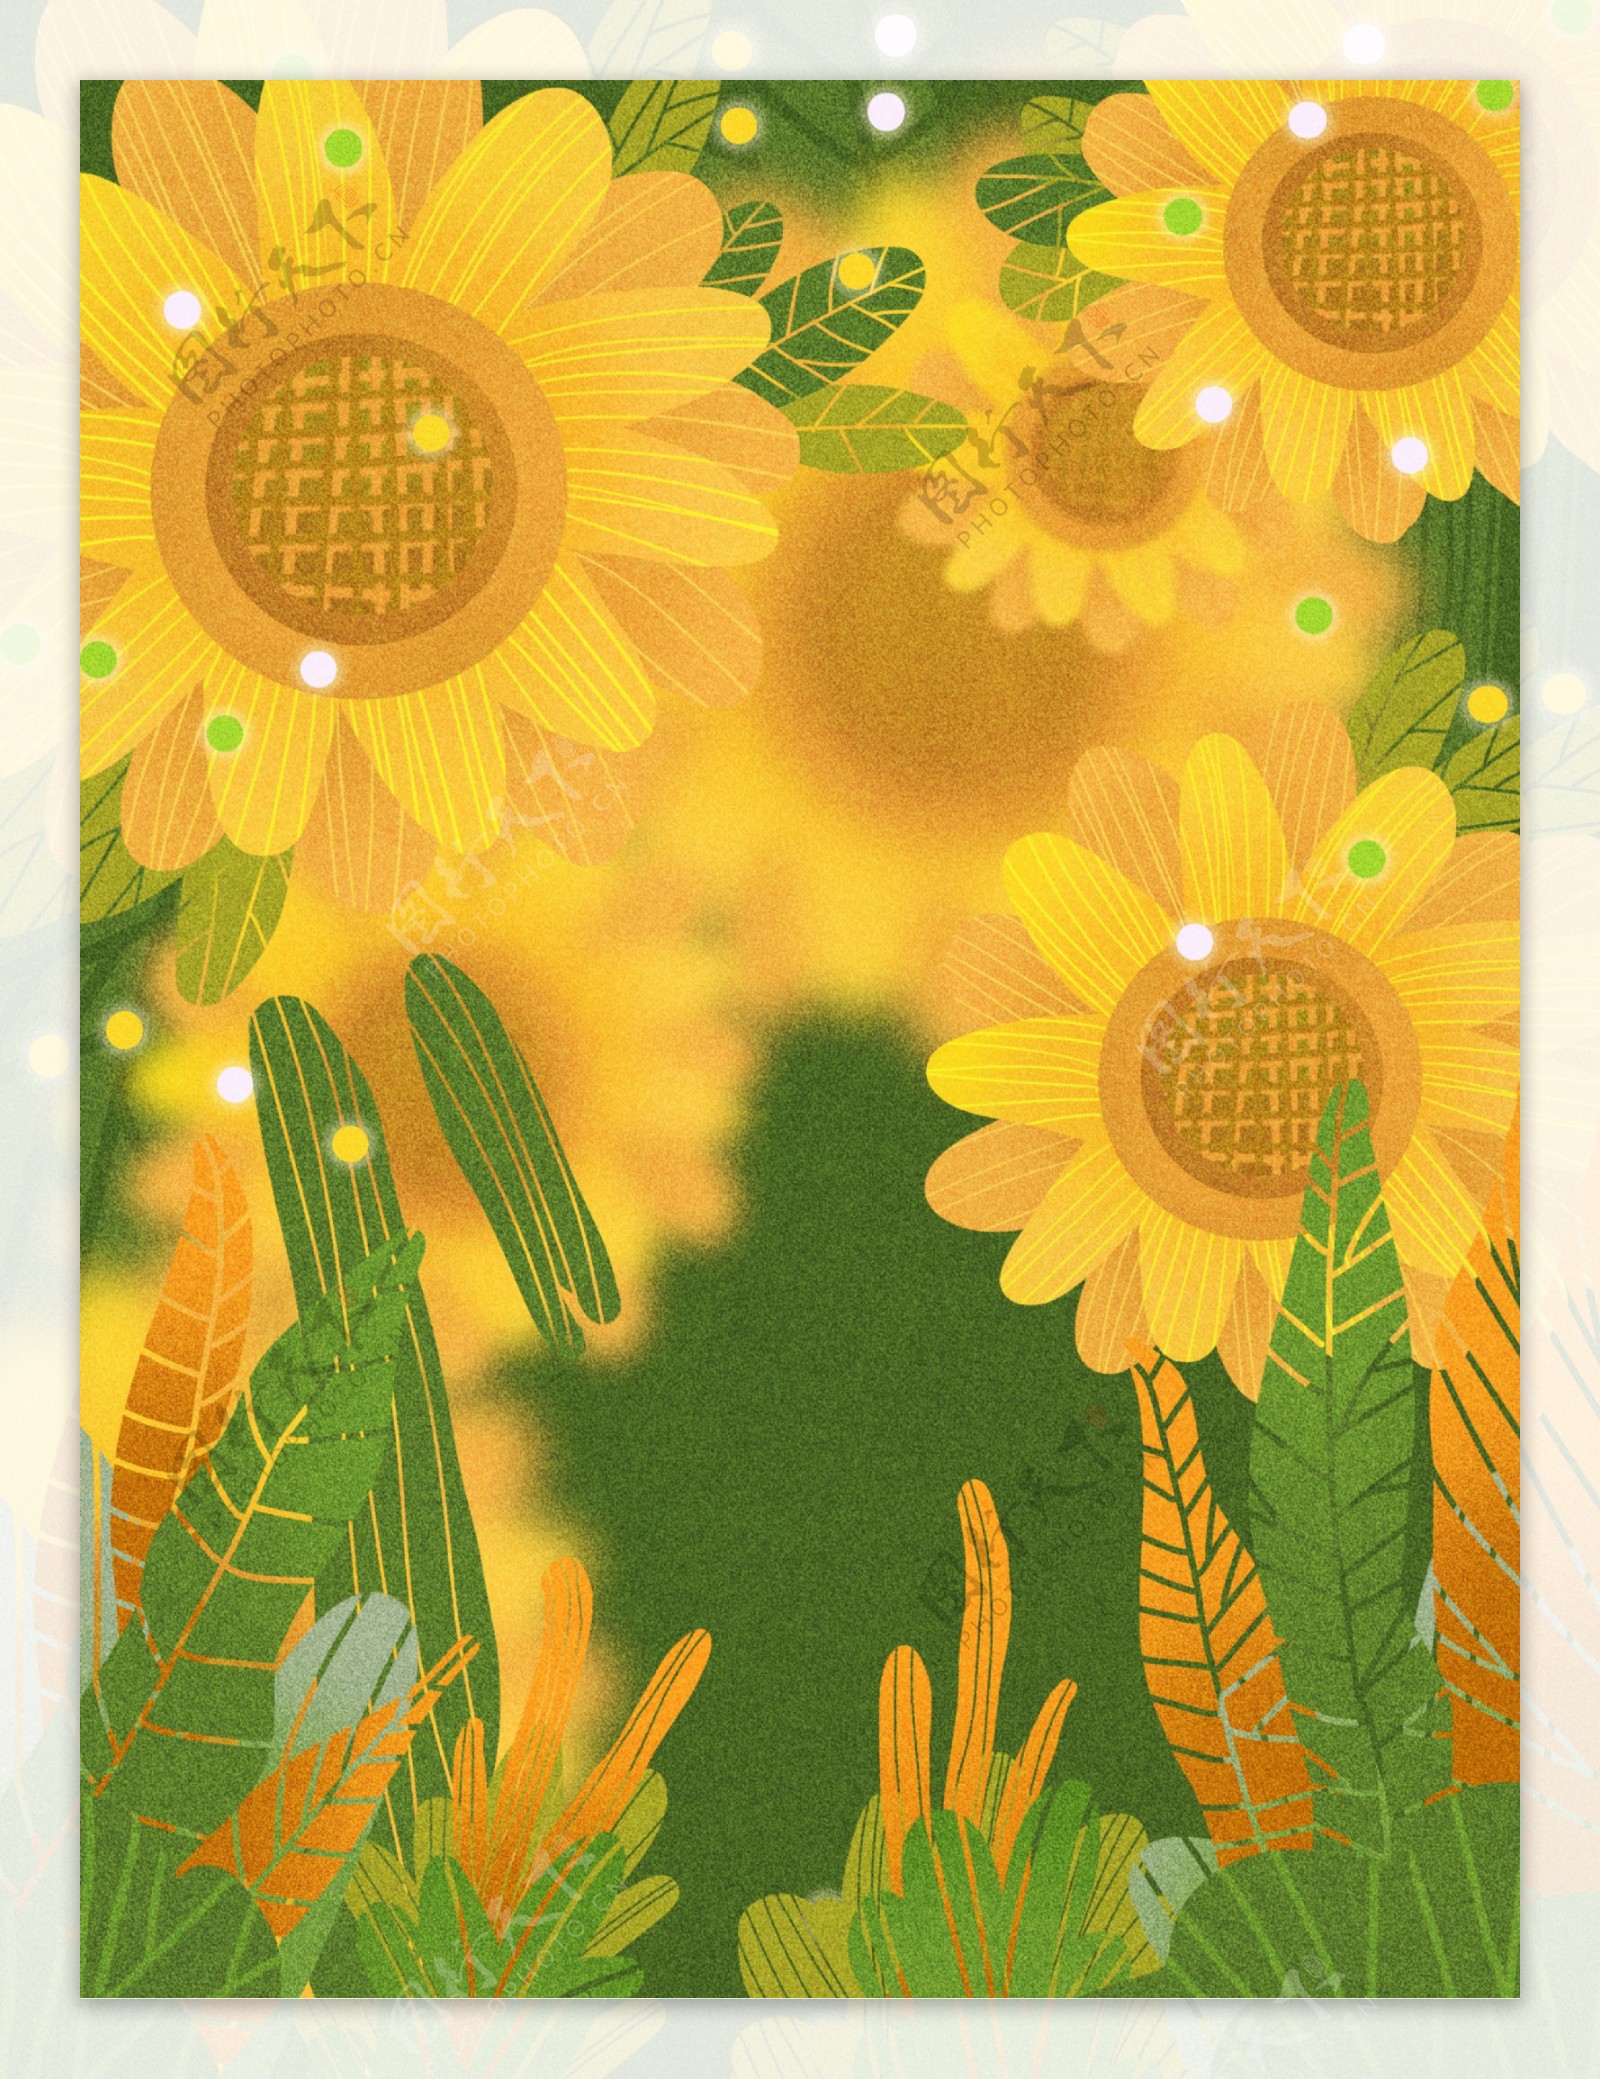 创意黄色太阳花背景素材